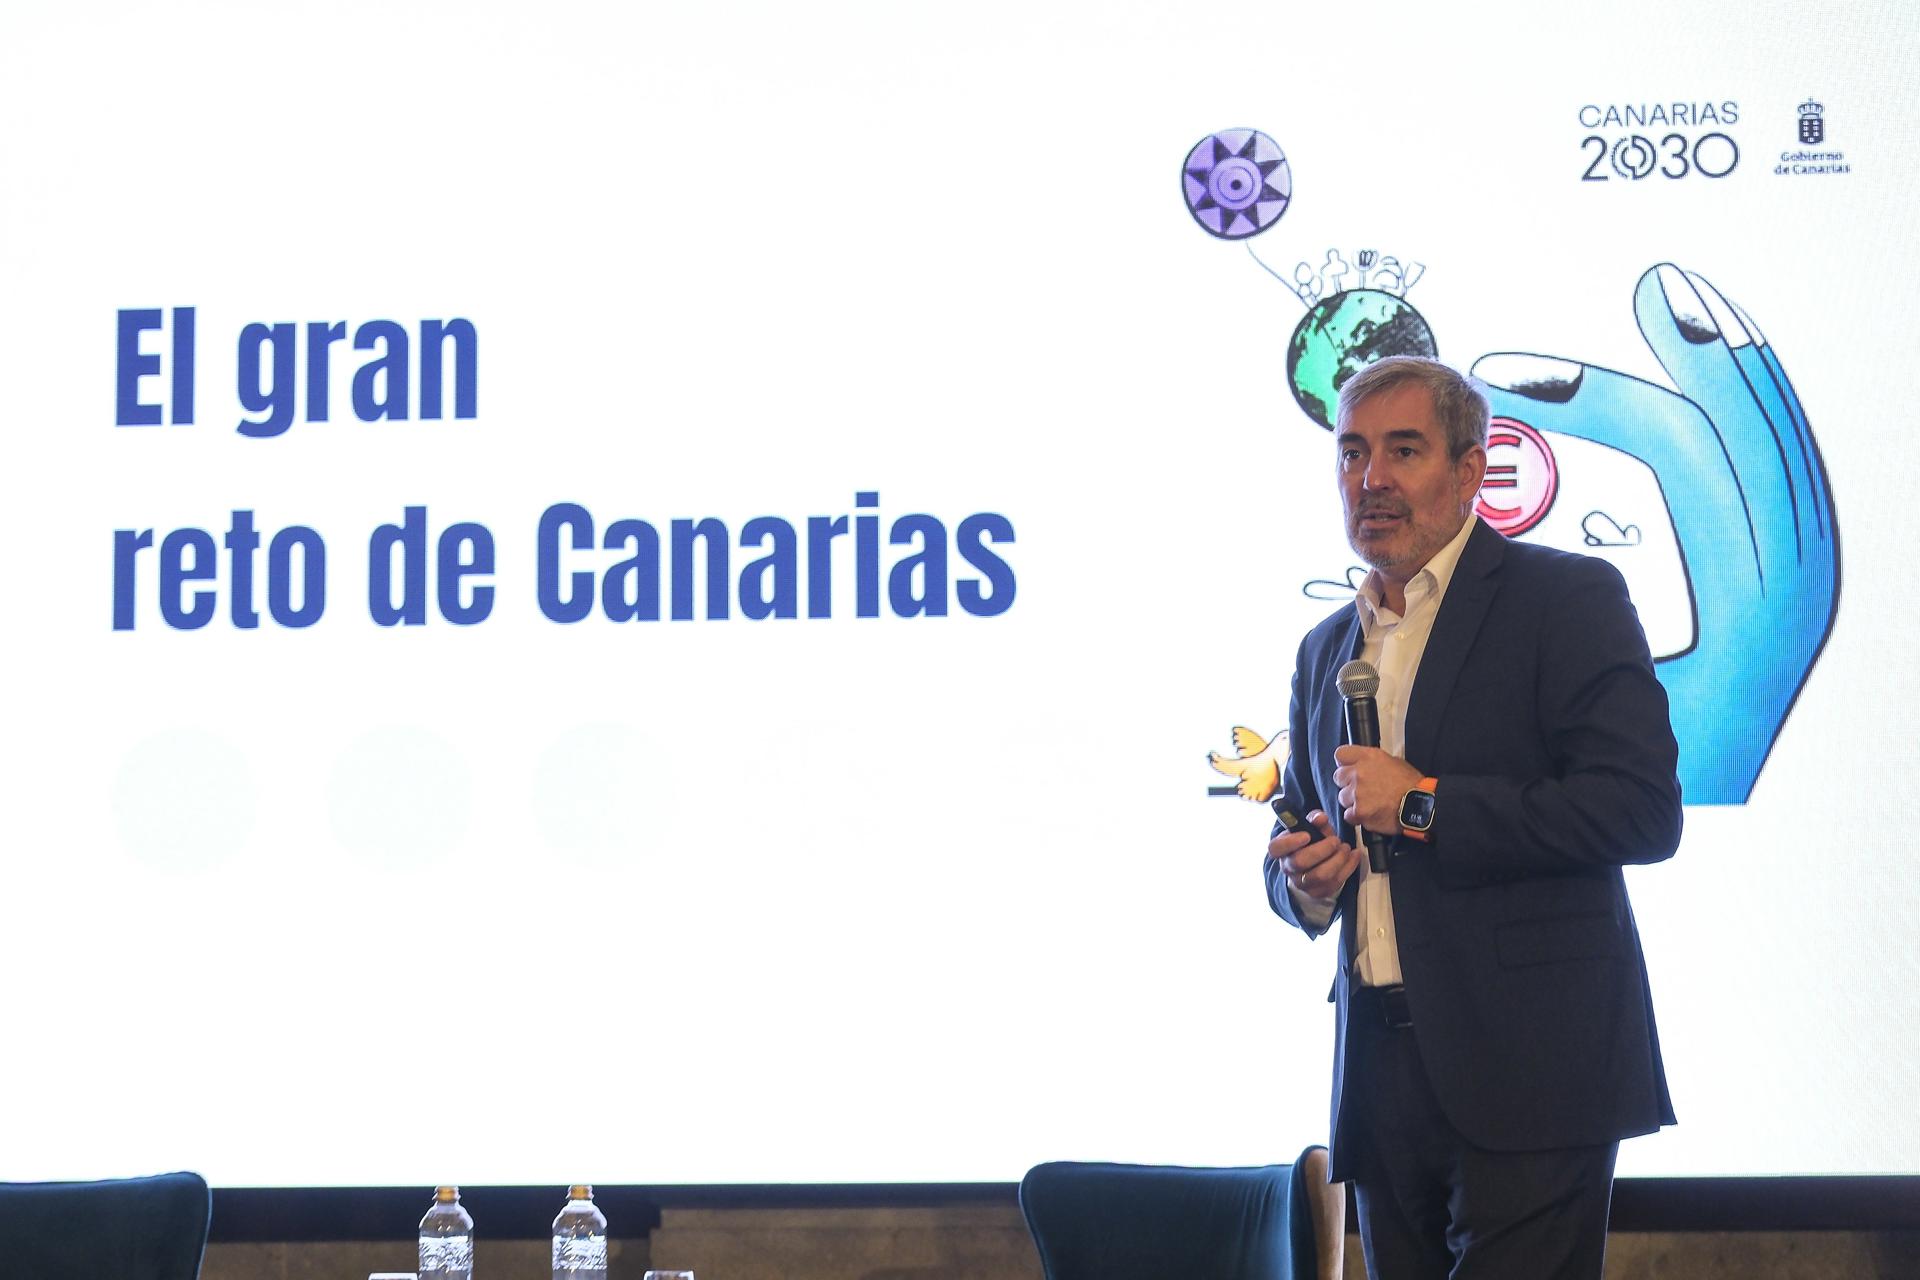 El presidente de Canarias, Fernando Clavijo, participó este lunes en un encuentro organizado por los diarios "La Provincia" y "El Día". EFE/Ángel Medina G.